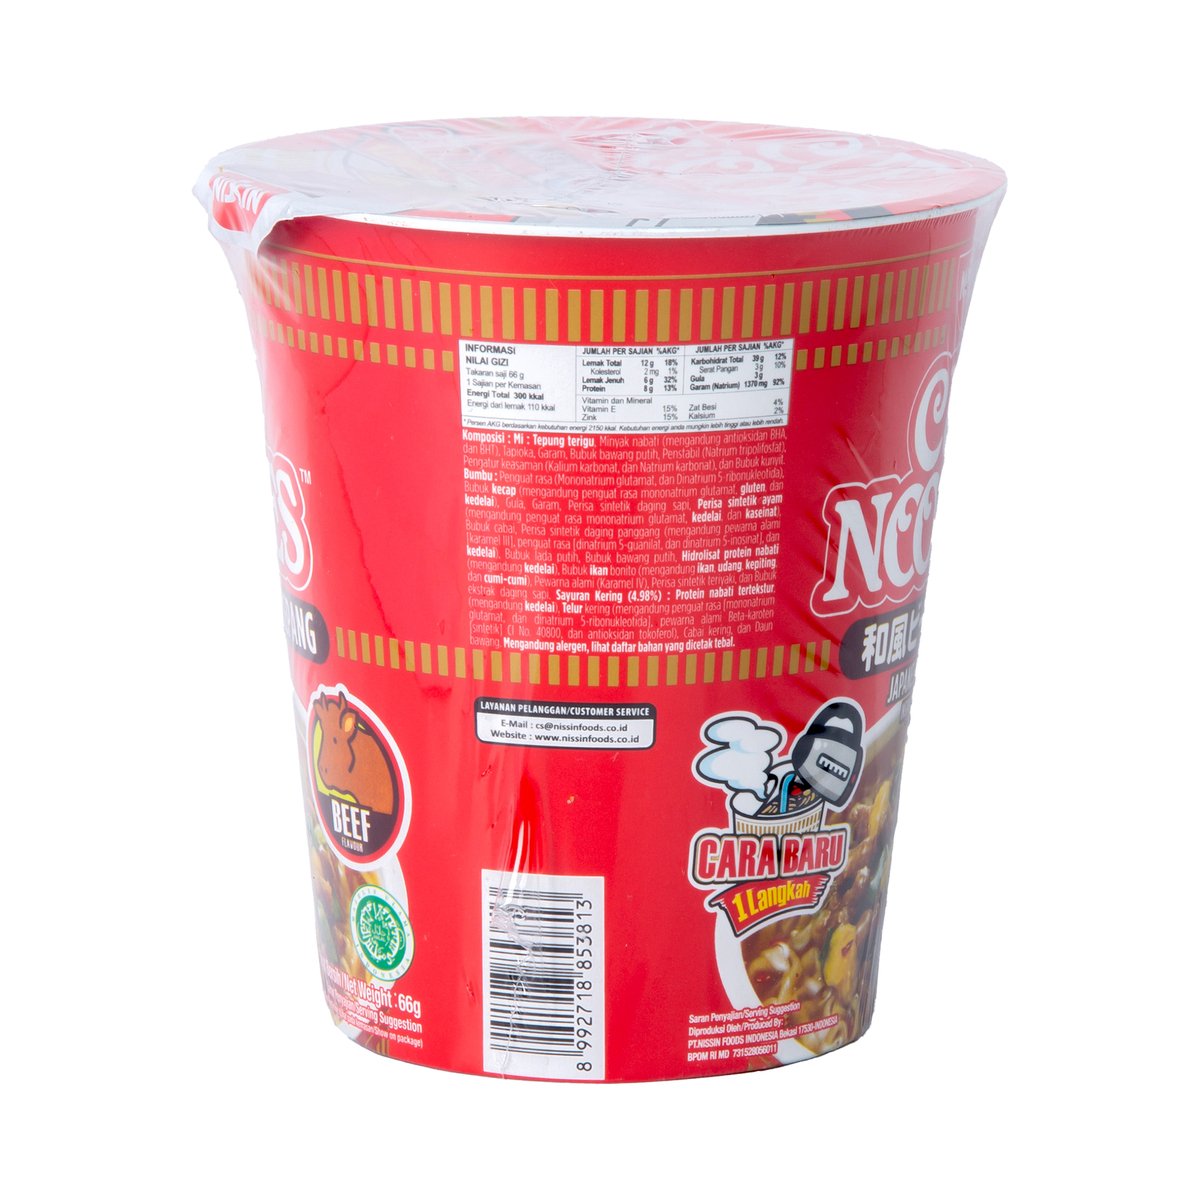 Nissin Beef Flavor Cup Noodles 66 g